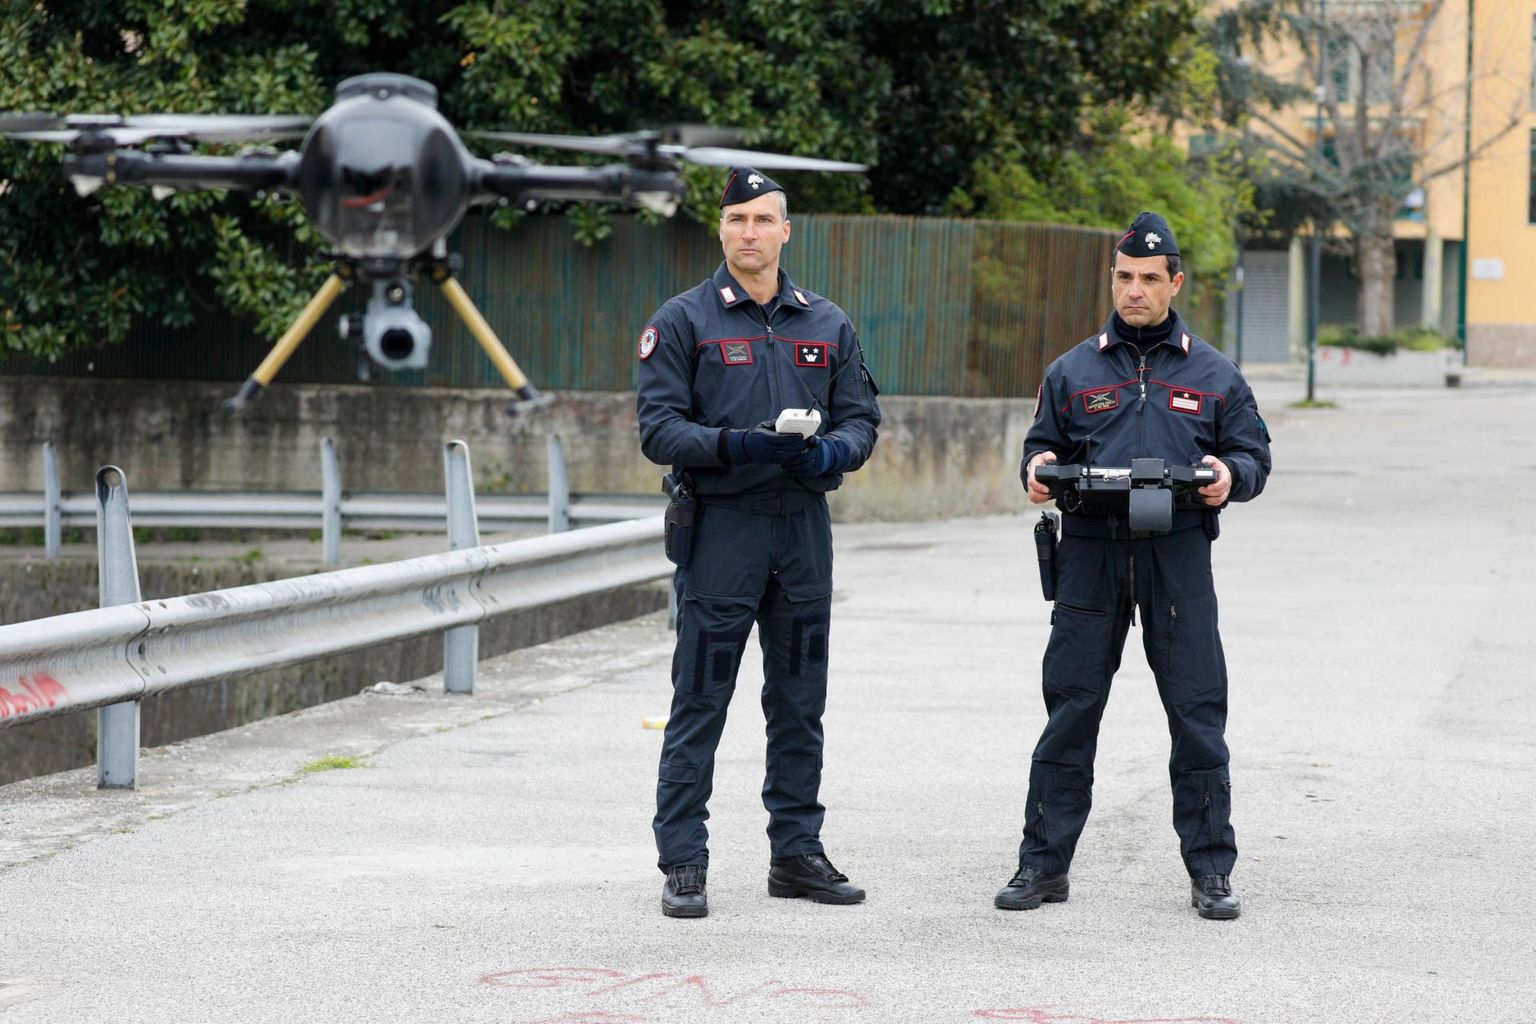 Itaalia karabinjeerid võtsid kasutusele droonid kontrollimaks, et inimesed ei kogune mitmekesi tänavatel ja parkides.